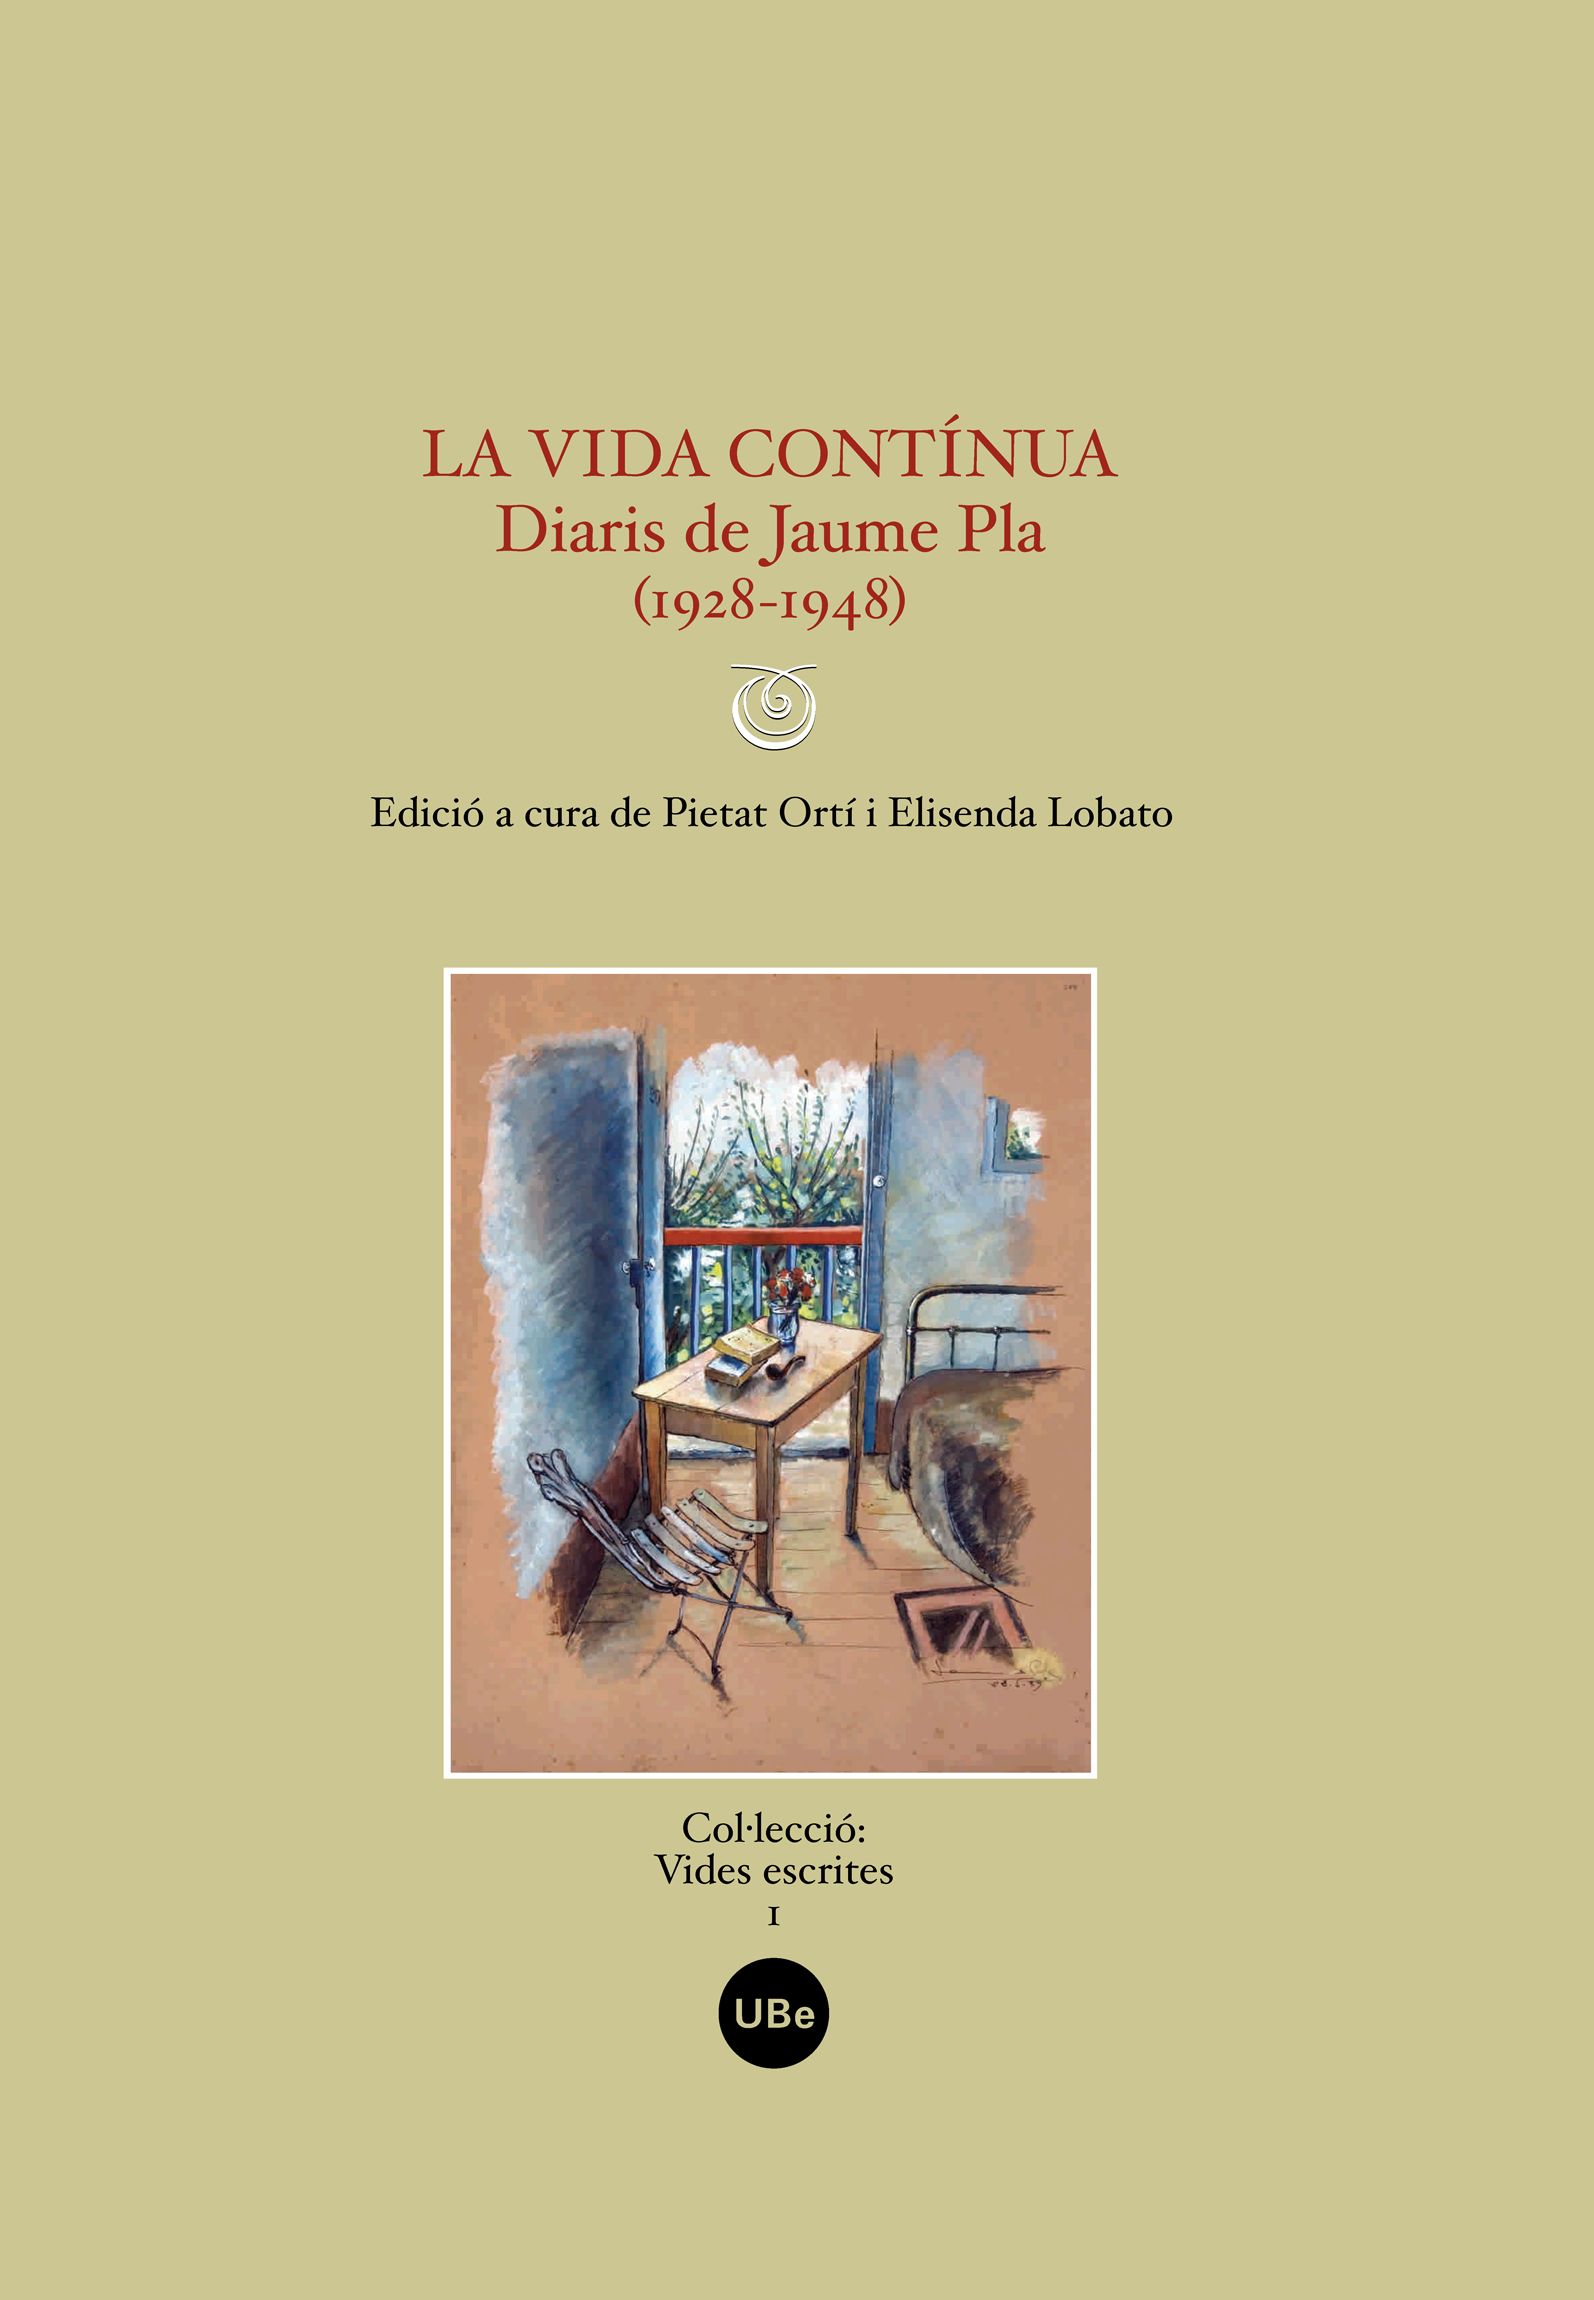 La vida contínua. Diaris de Jaume Pla (1928-1948)